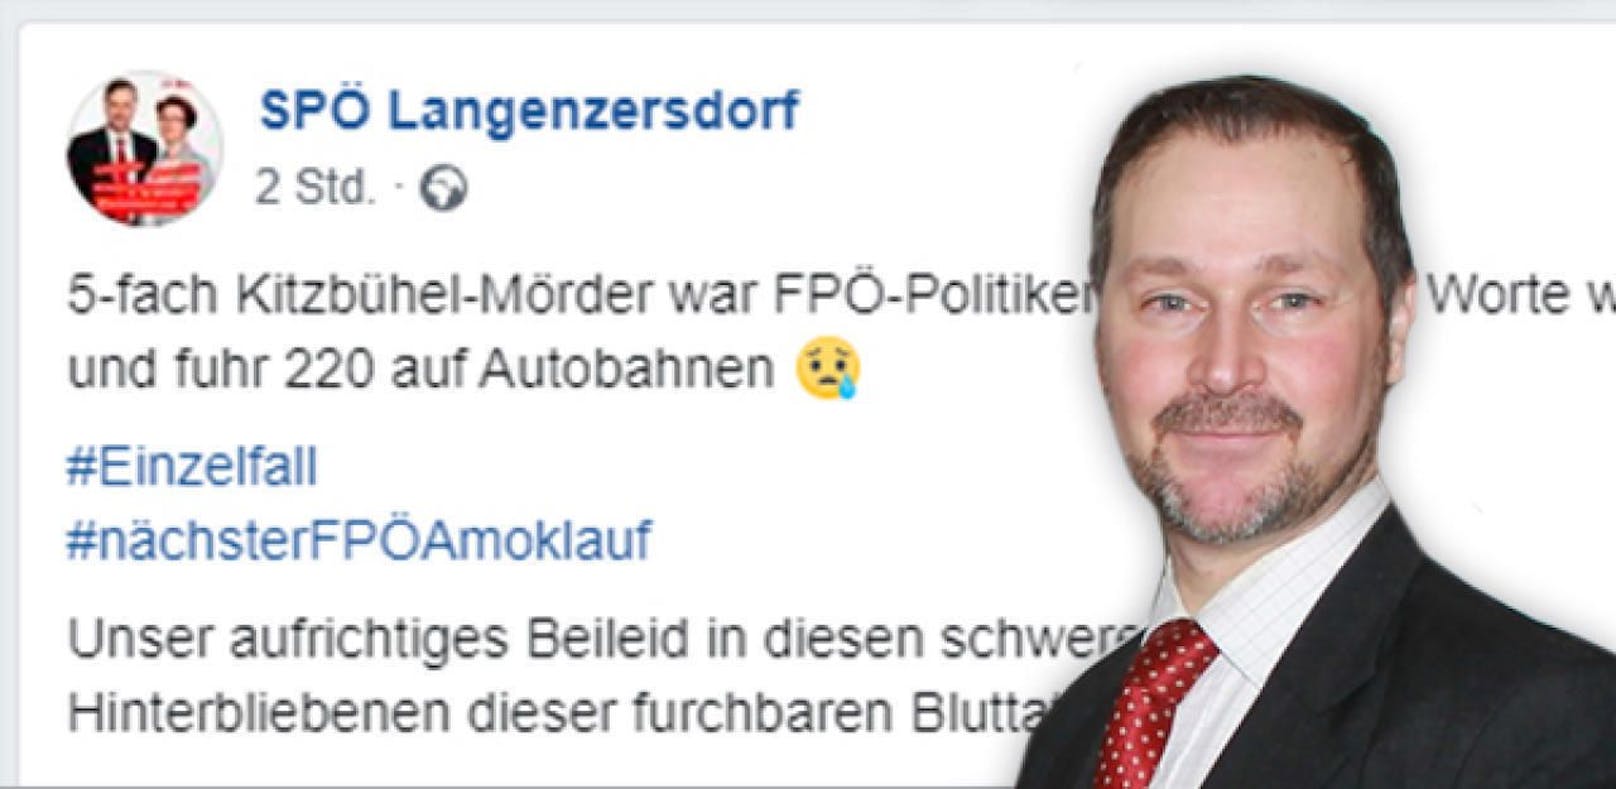 Dieser Beitrag läutete das Ende von Baumgärtels Karriere bei der SPÖ ein.